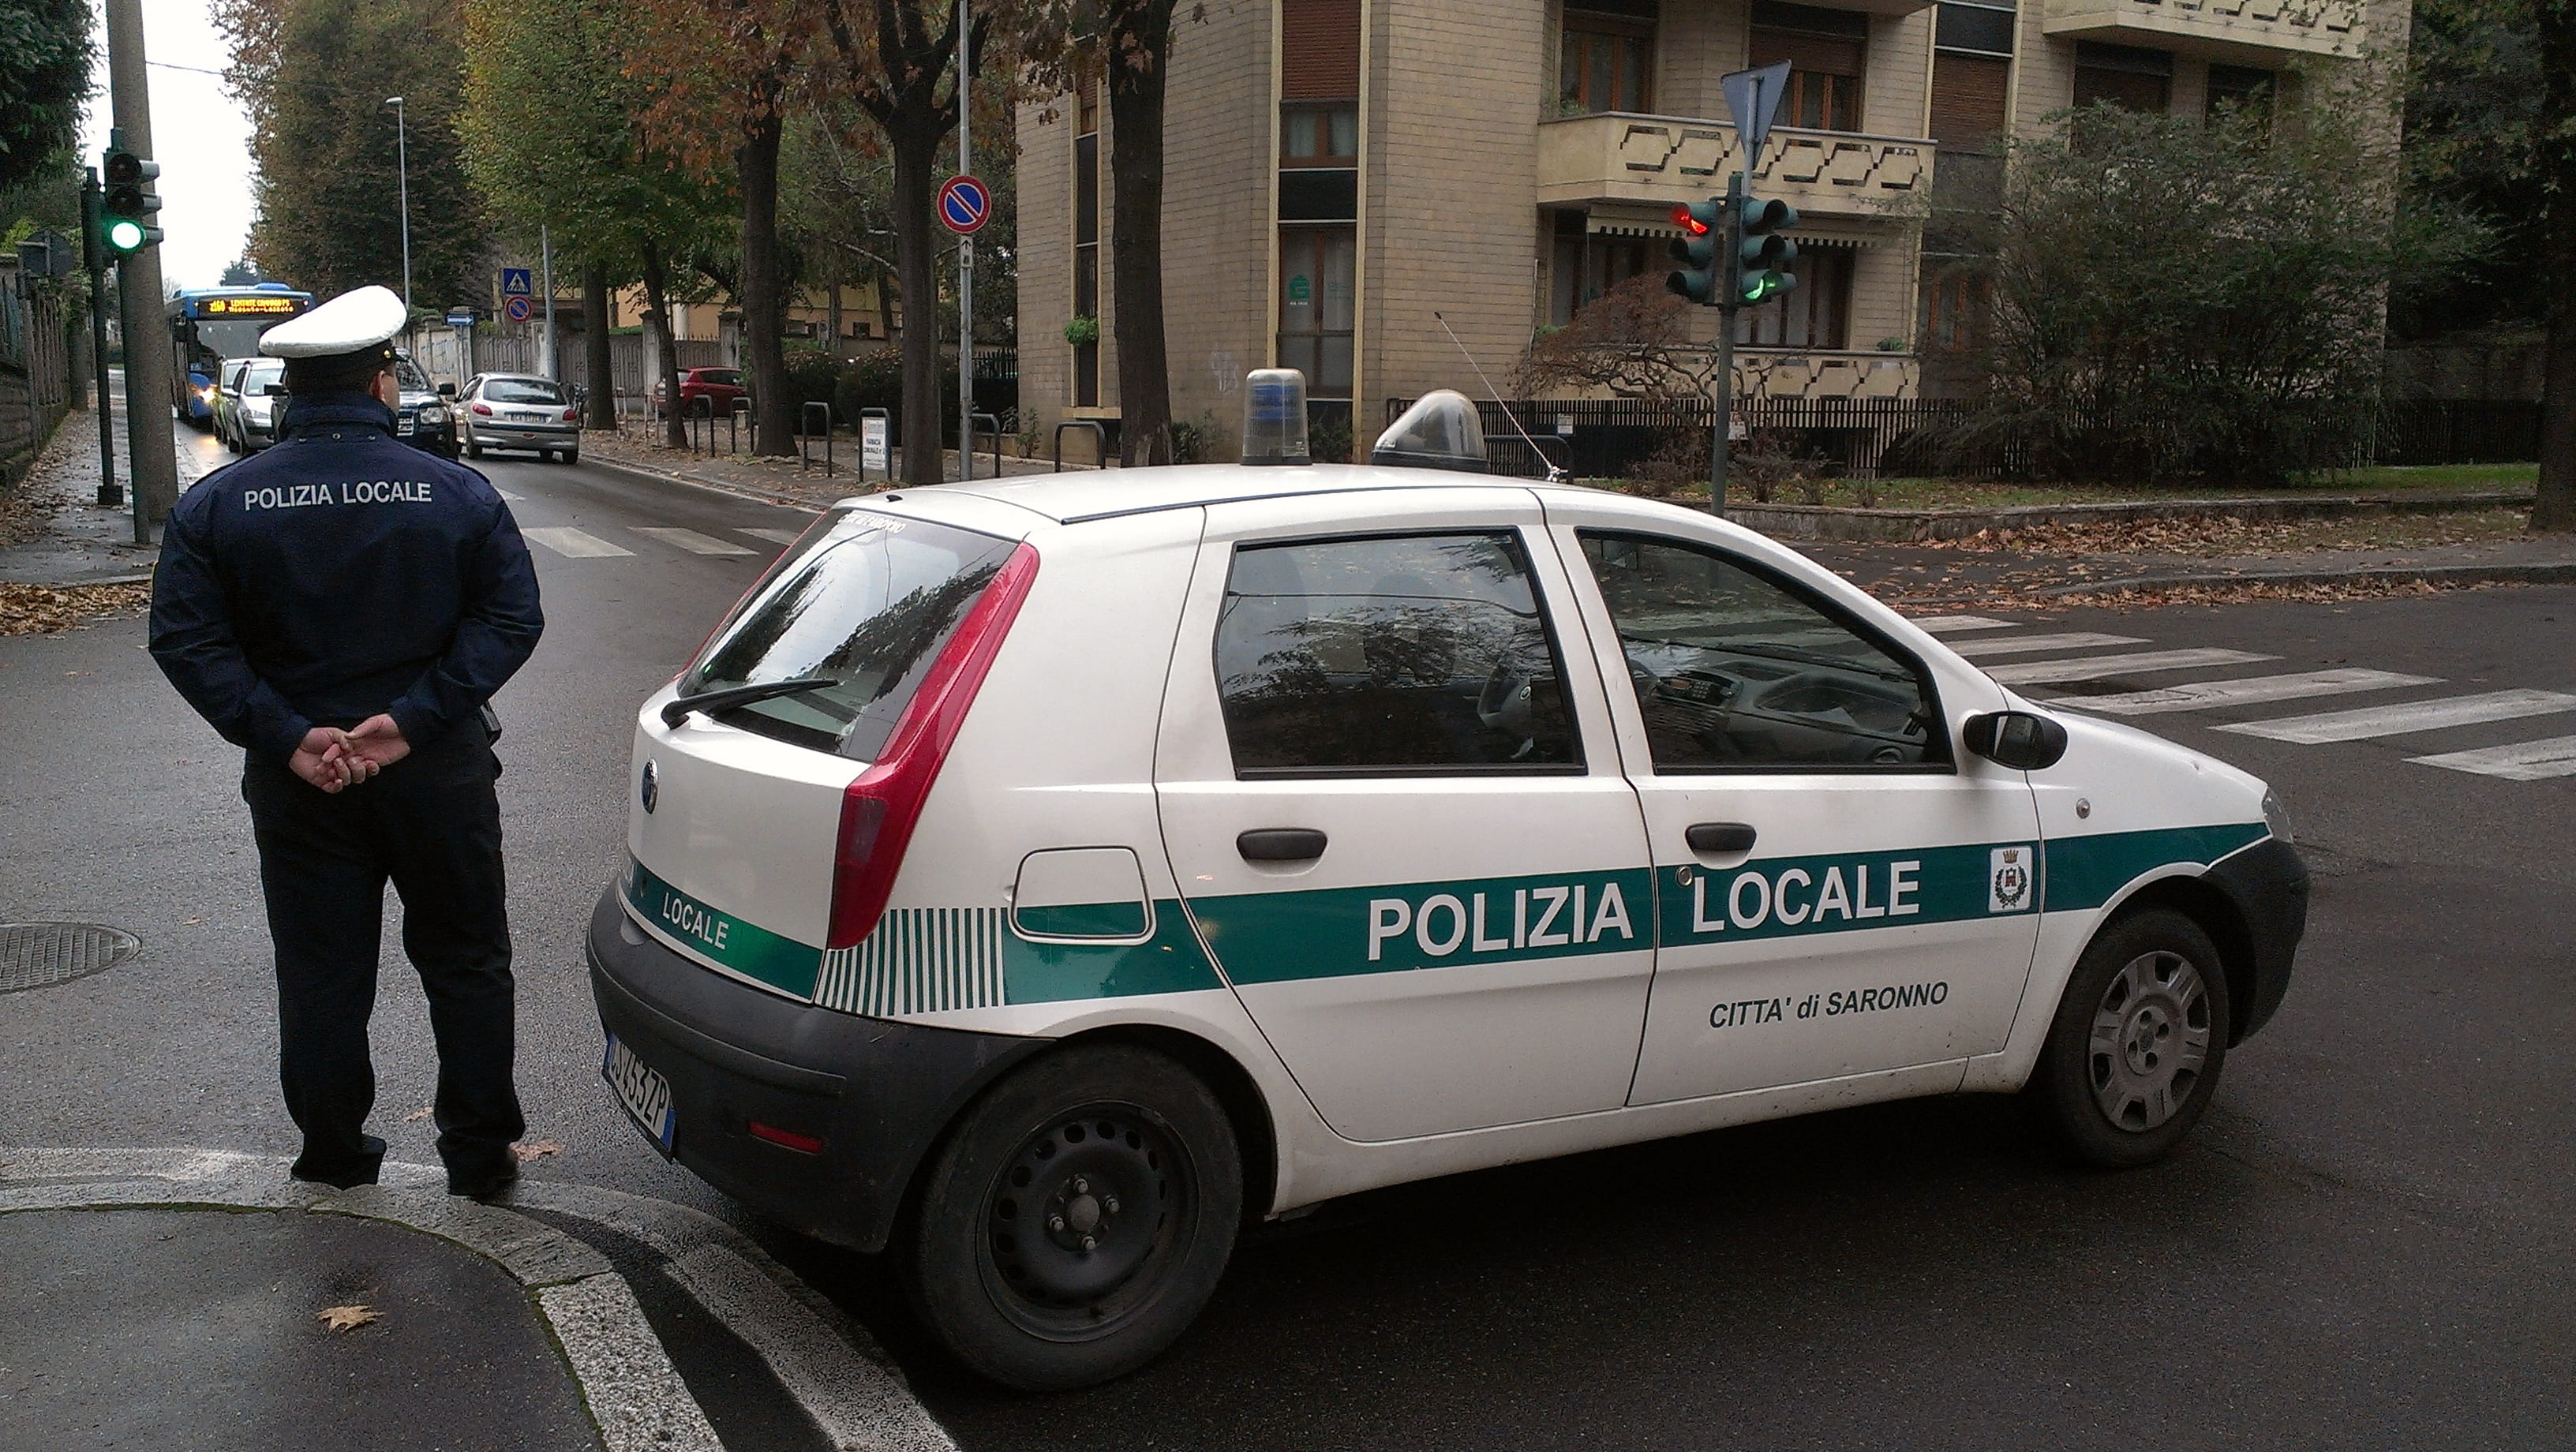 Polo contro Micra in via Milano: pensionato finisce all’ospedale